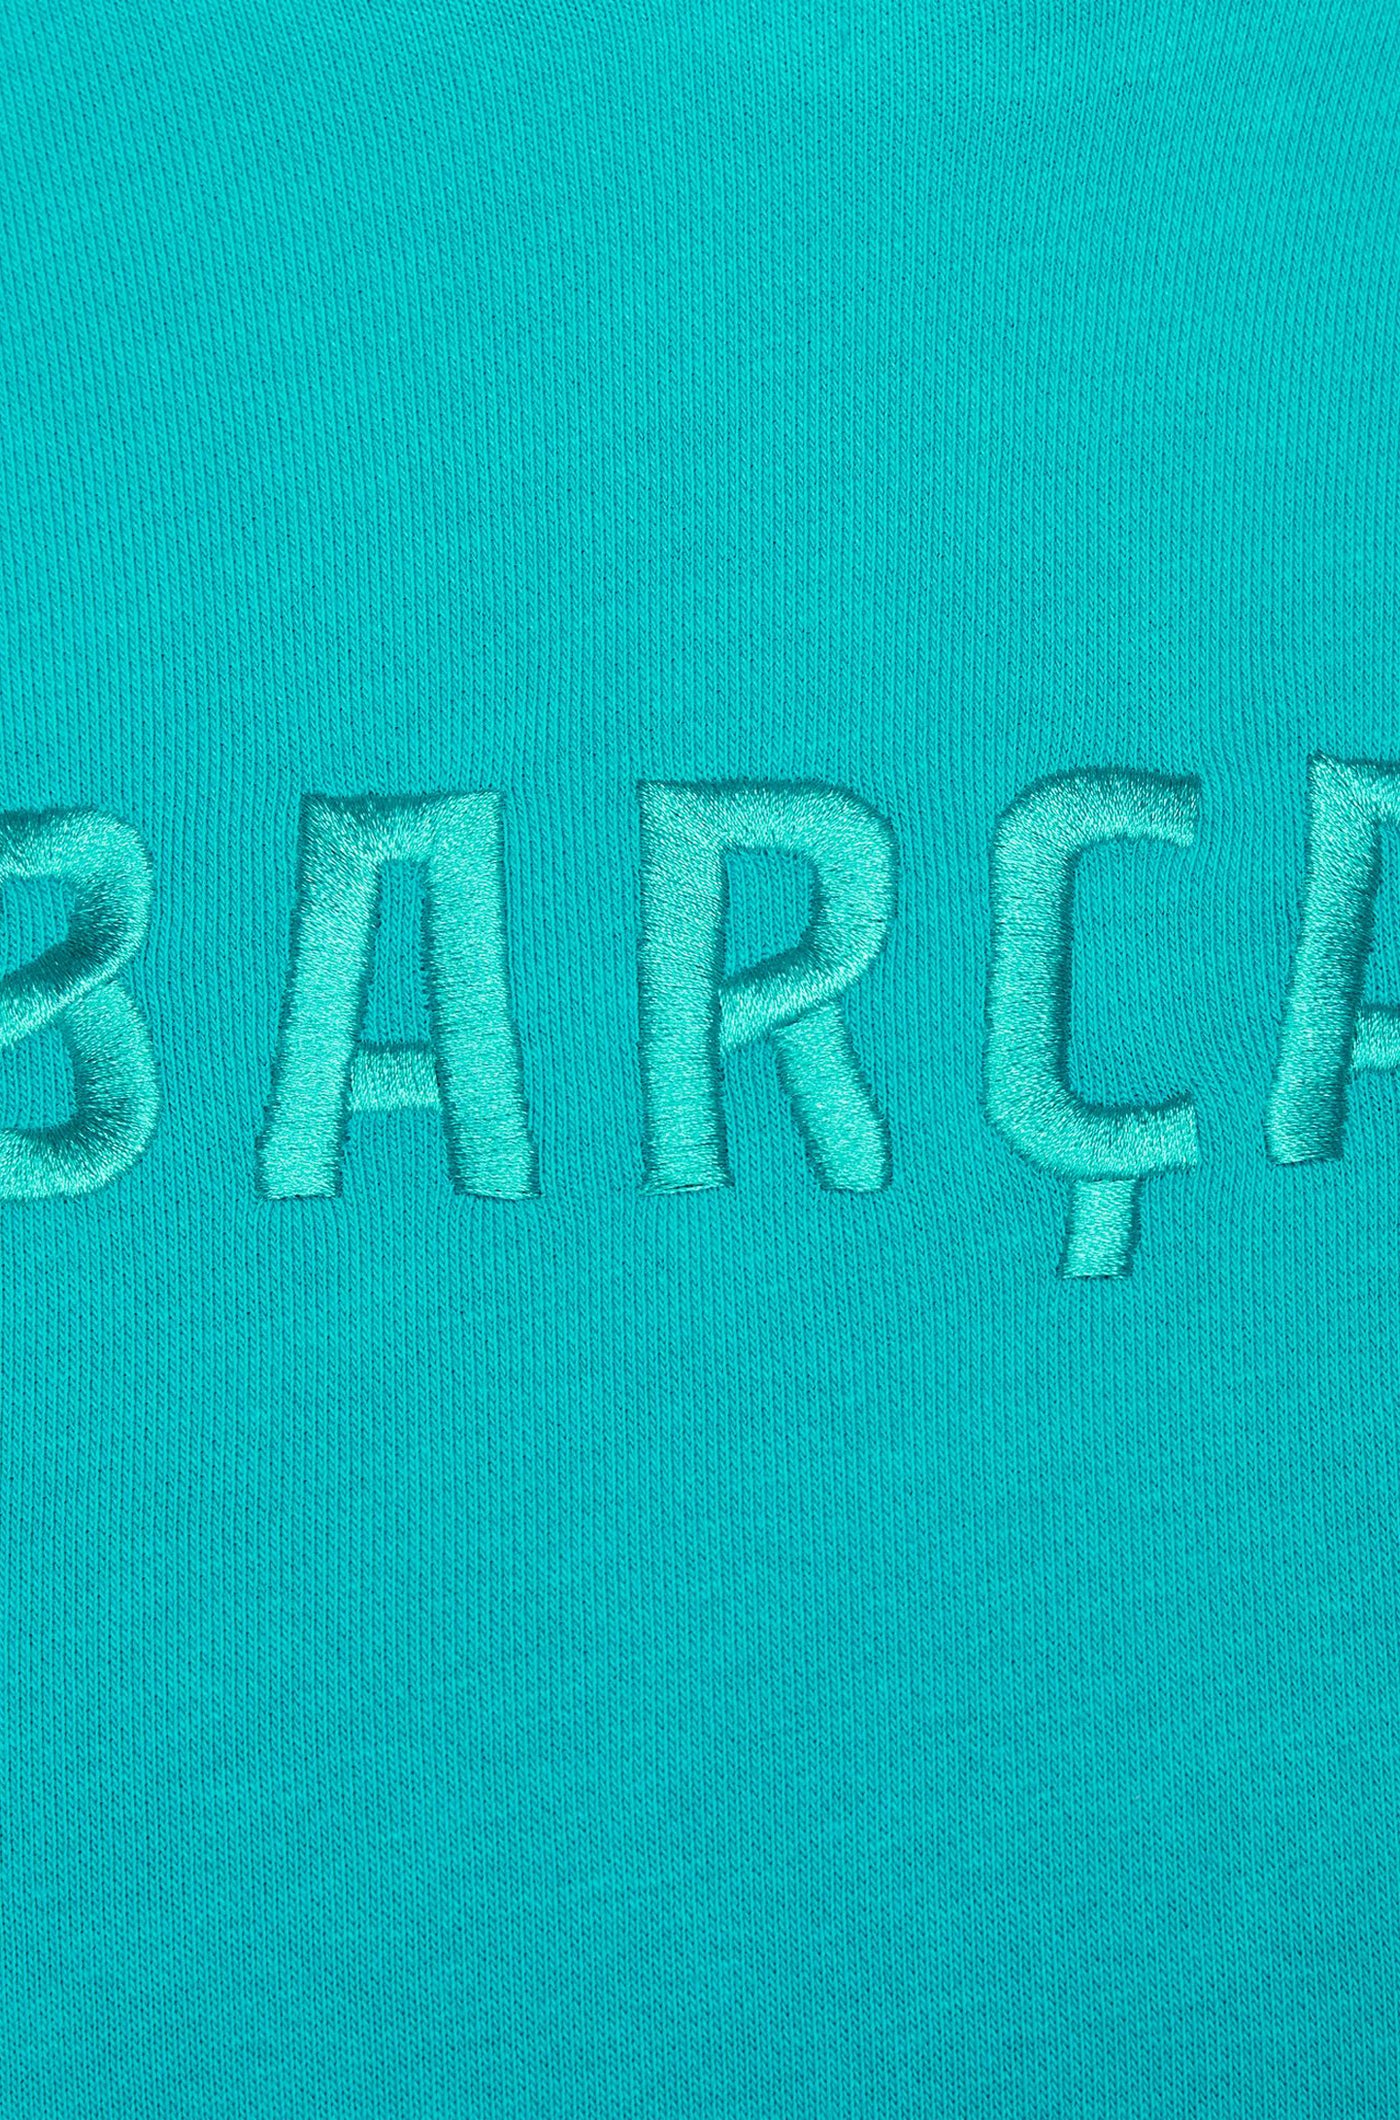 Sweat à capuche Barça Nike bleu - Femme